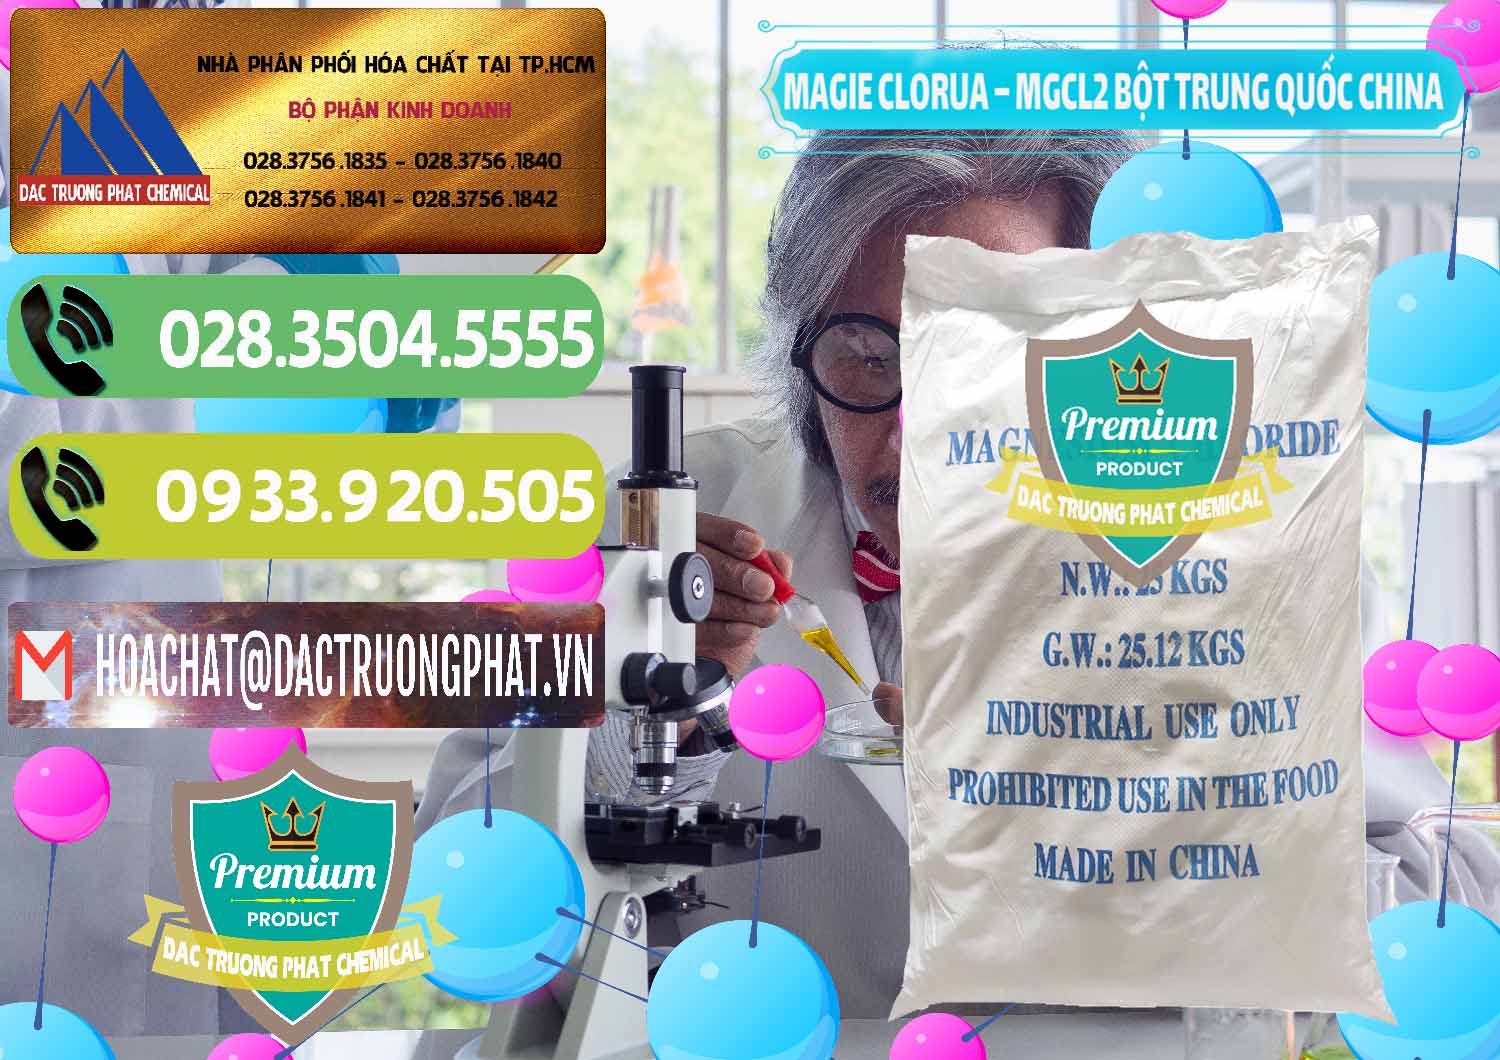 Cty chuyên phân phối _ bán Magie Clorua – MGCL2 96% Dạng Bột Bao Chữ Xanh Trung Quốc China - 0207 - Đơn vị chuyên phân phối - nhập khẩu hóa chất tại TP.HCM - hoachatmientay.vn